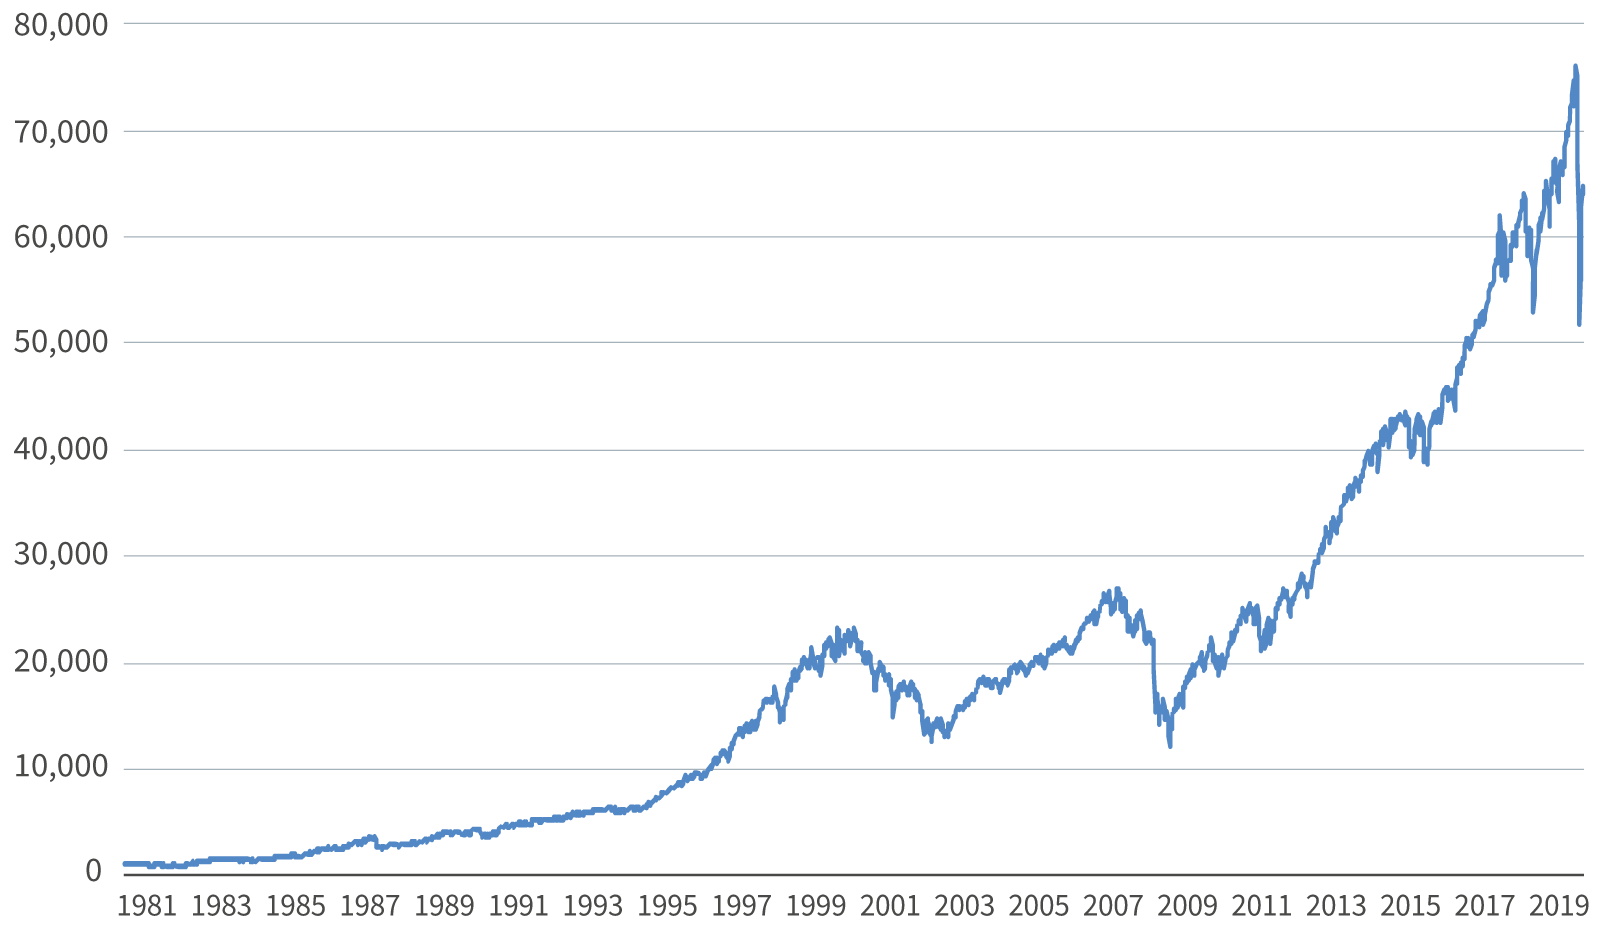 SPX Total Return index over time